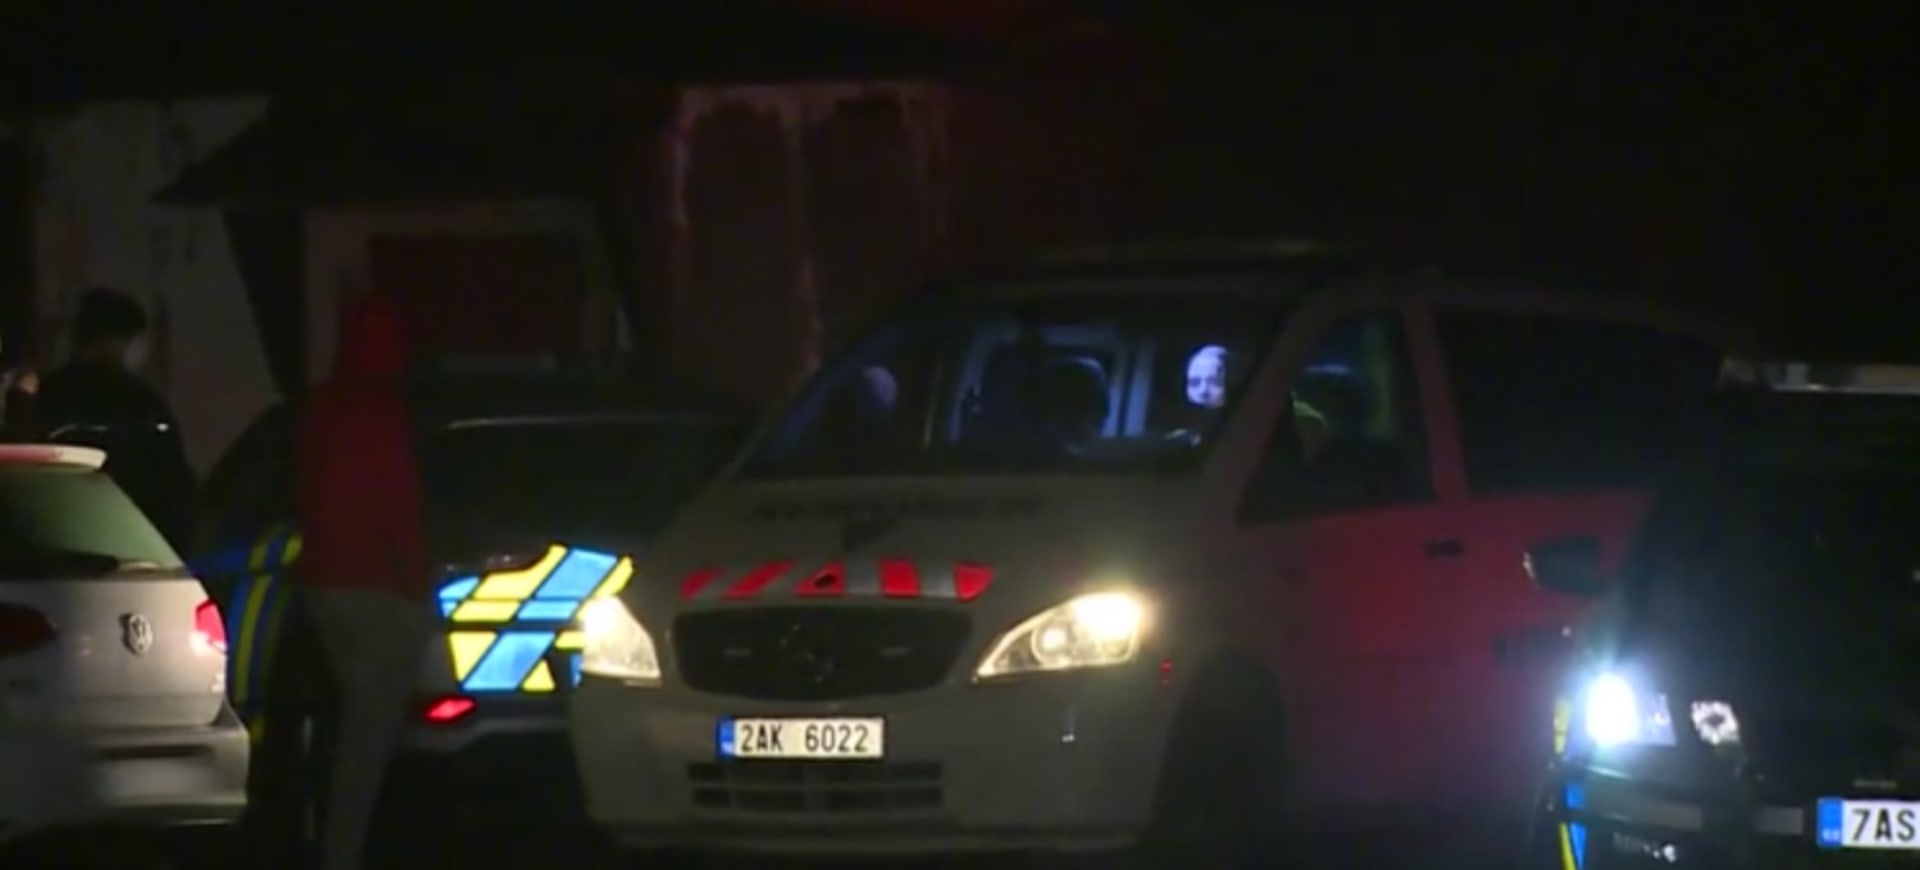 Hodinu před půlnocí na pražském Zlíchově u vjezdu do soukromého areálu stála policejní auta.